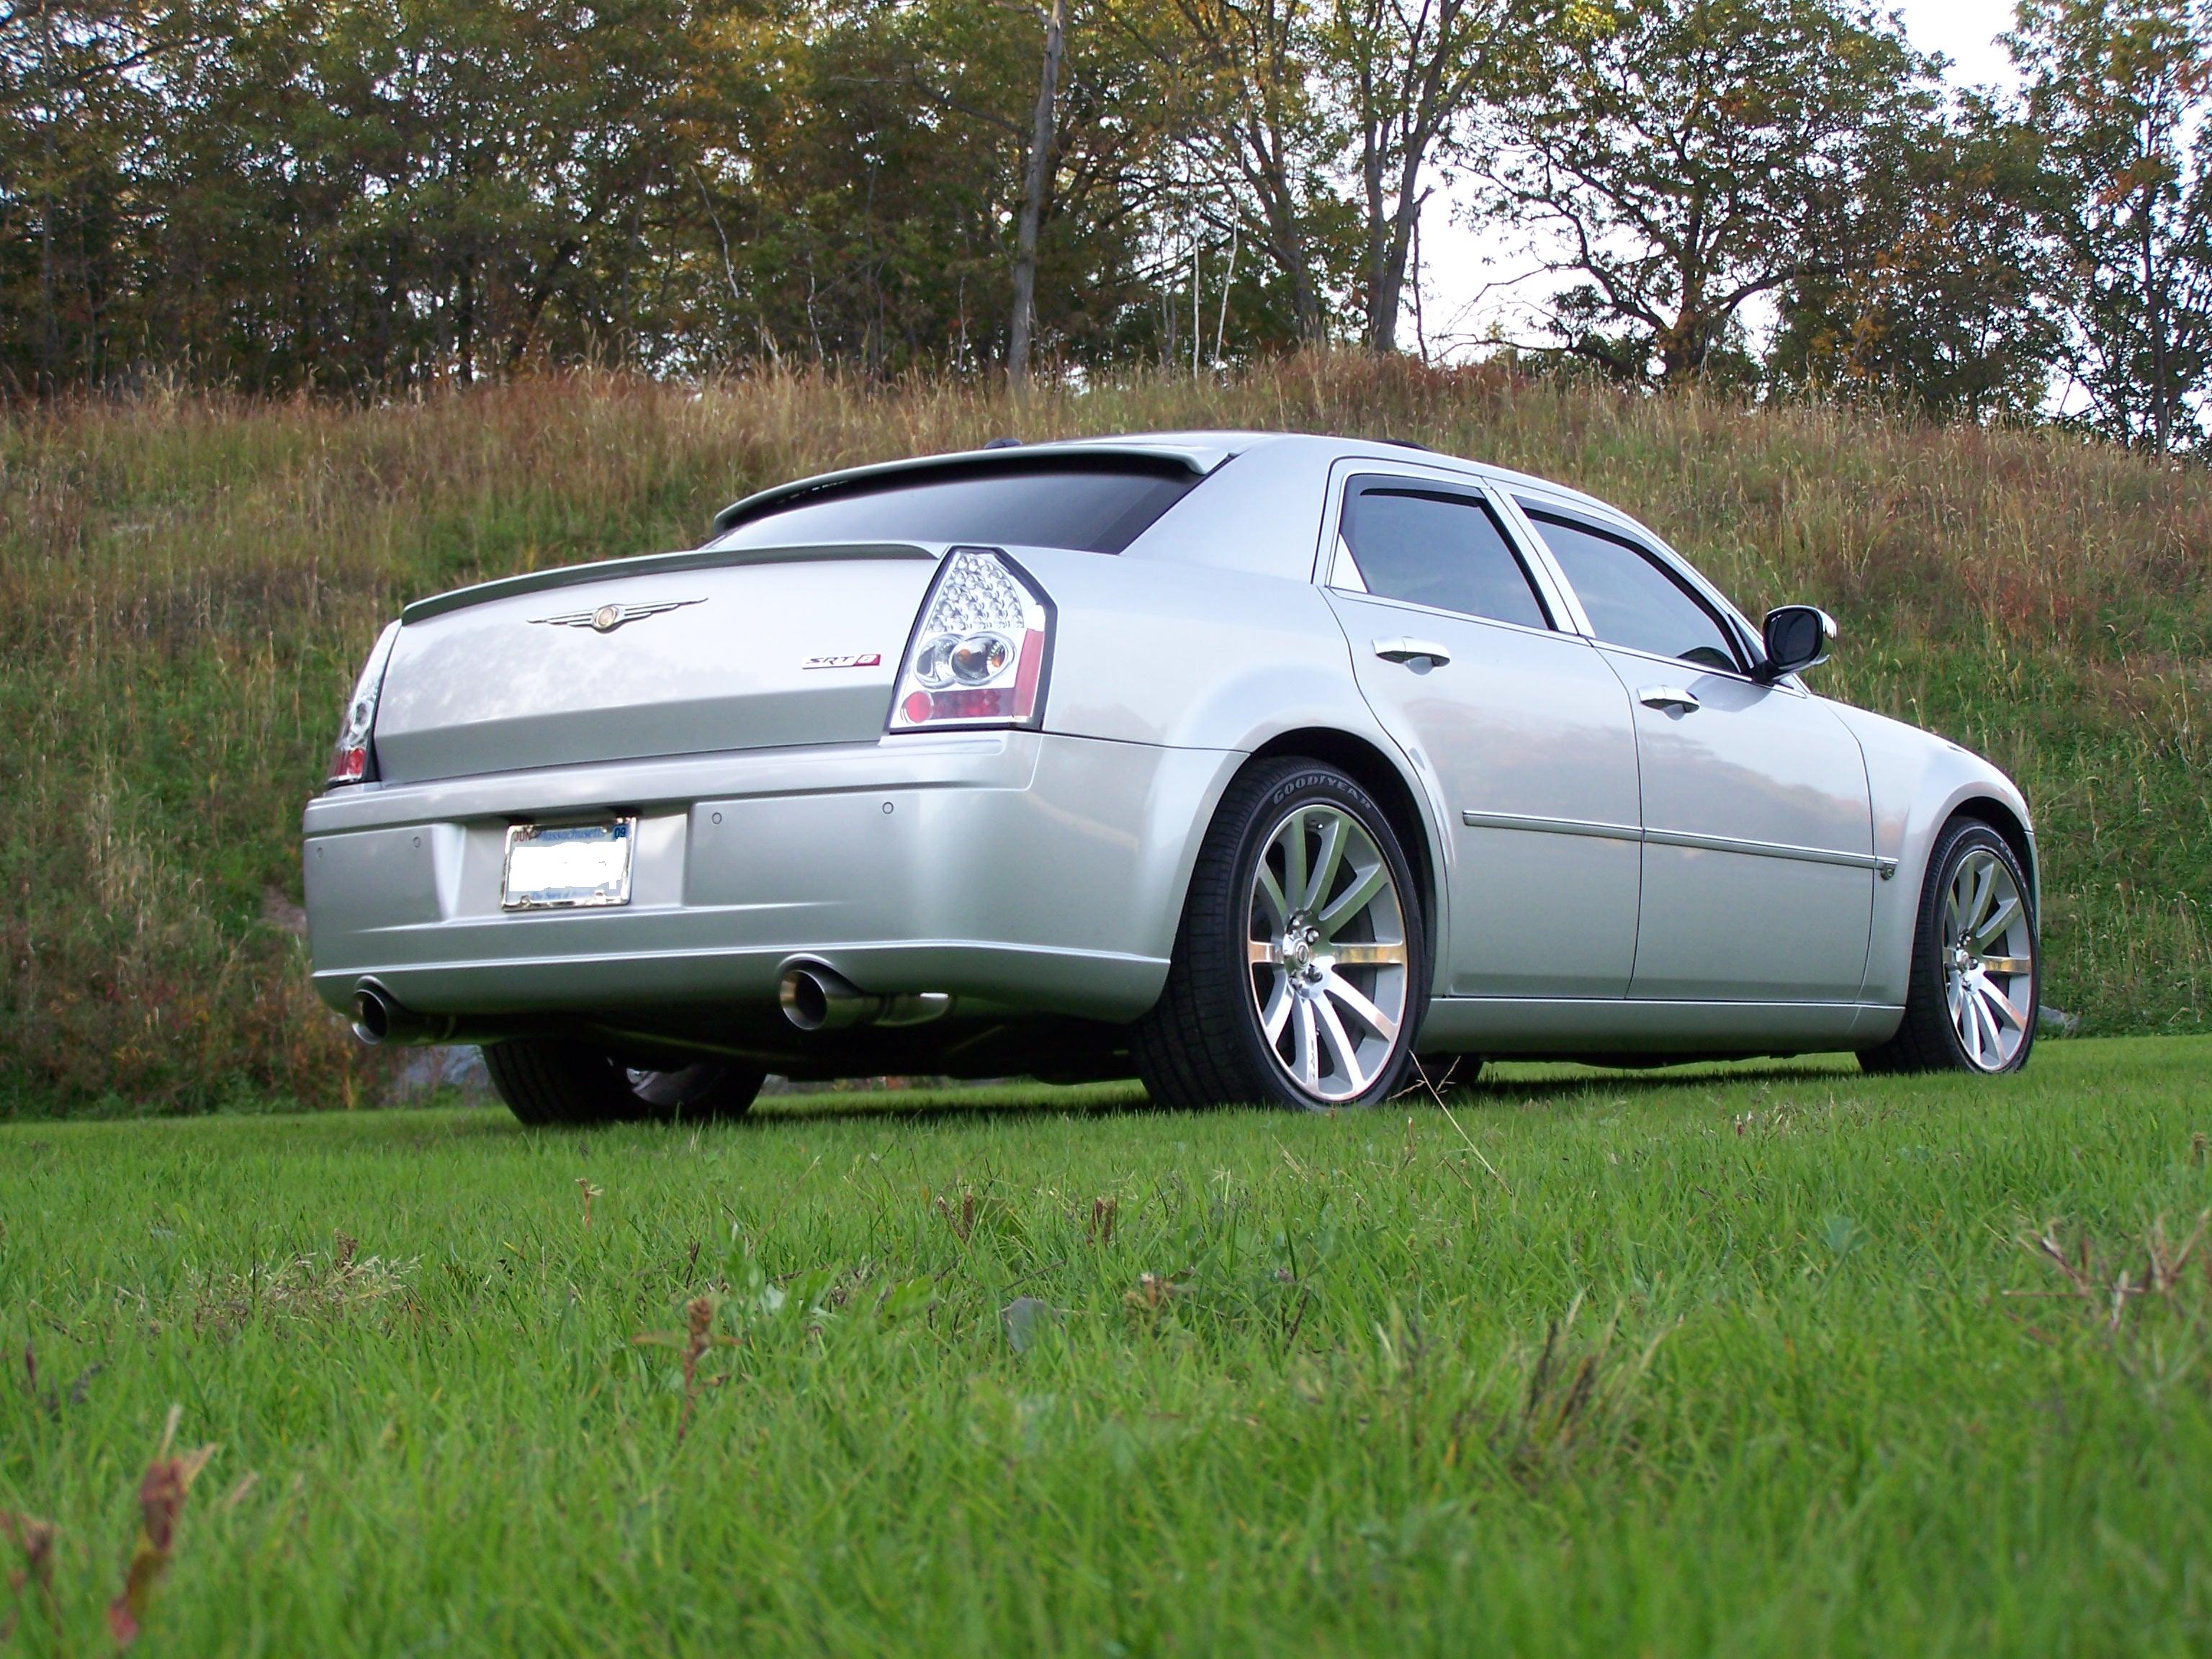  2006 Chrysler 300 srt-8